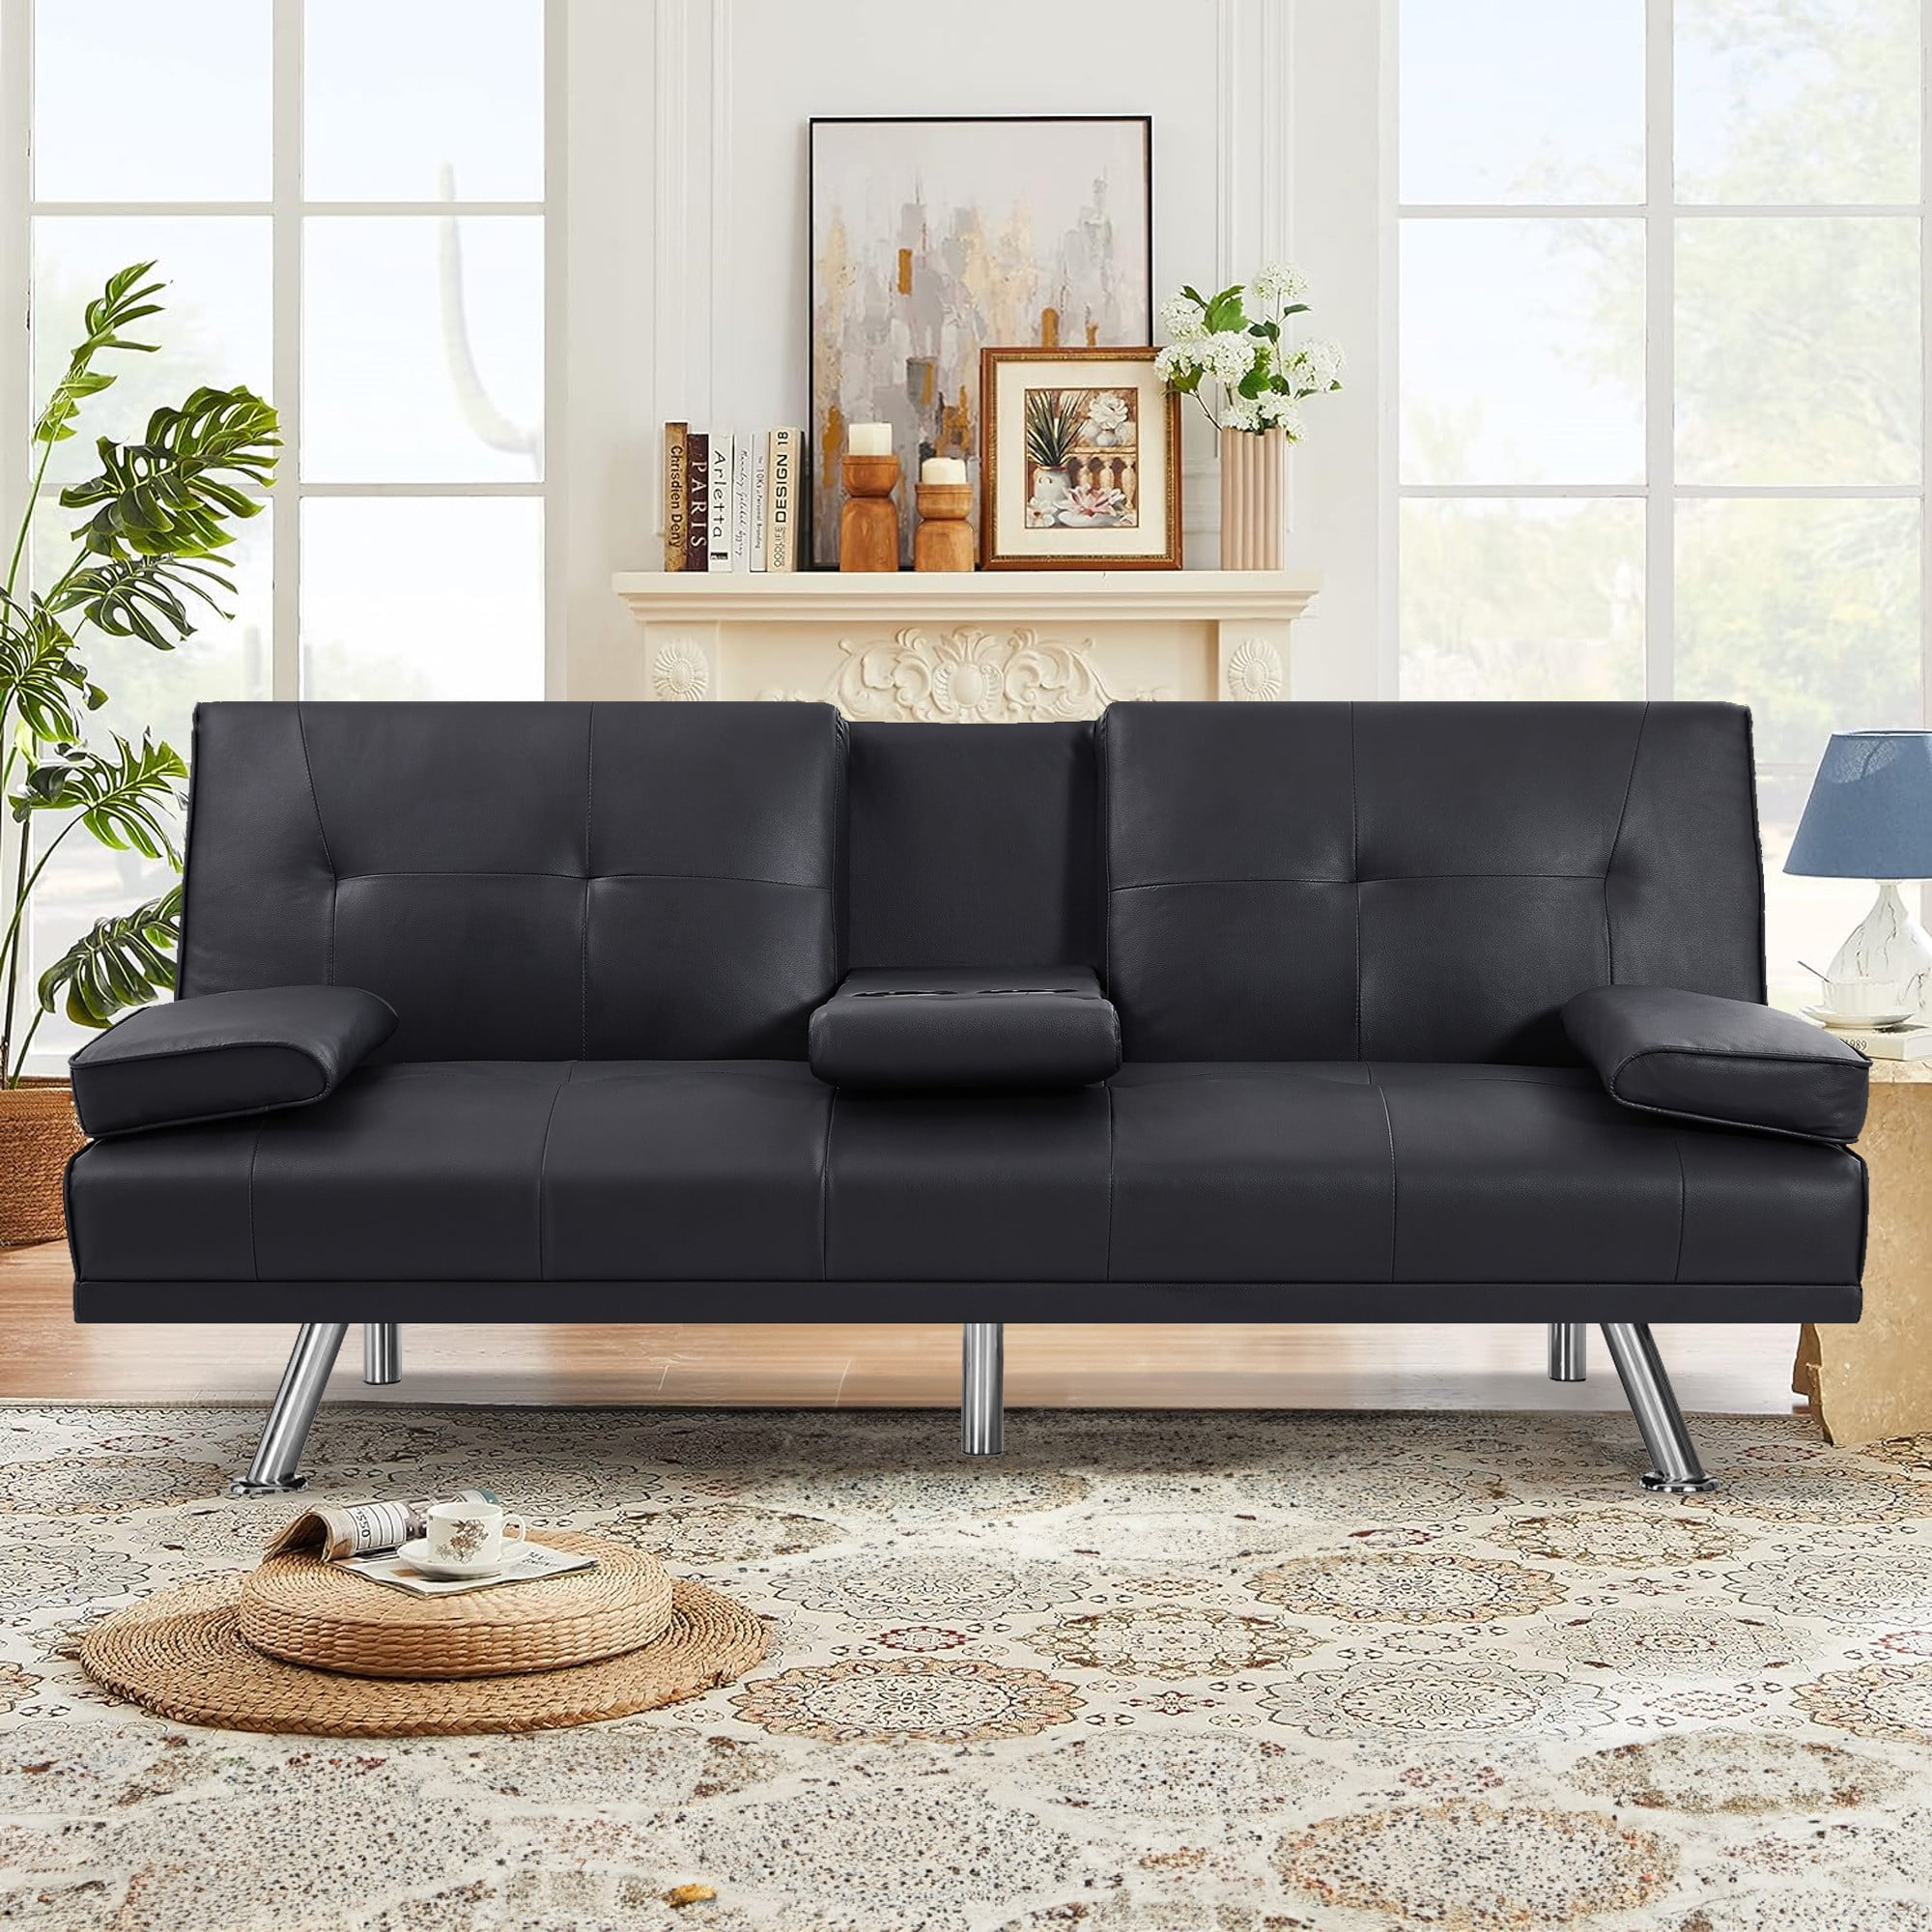 Aukfa Leather Futon Convertible Sofa